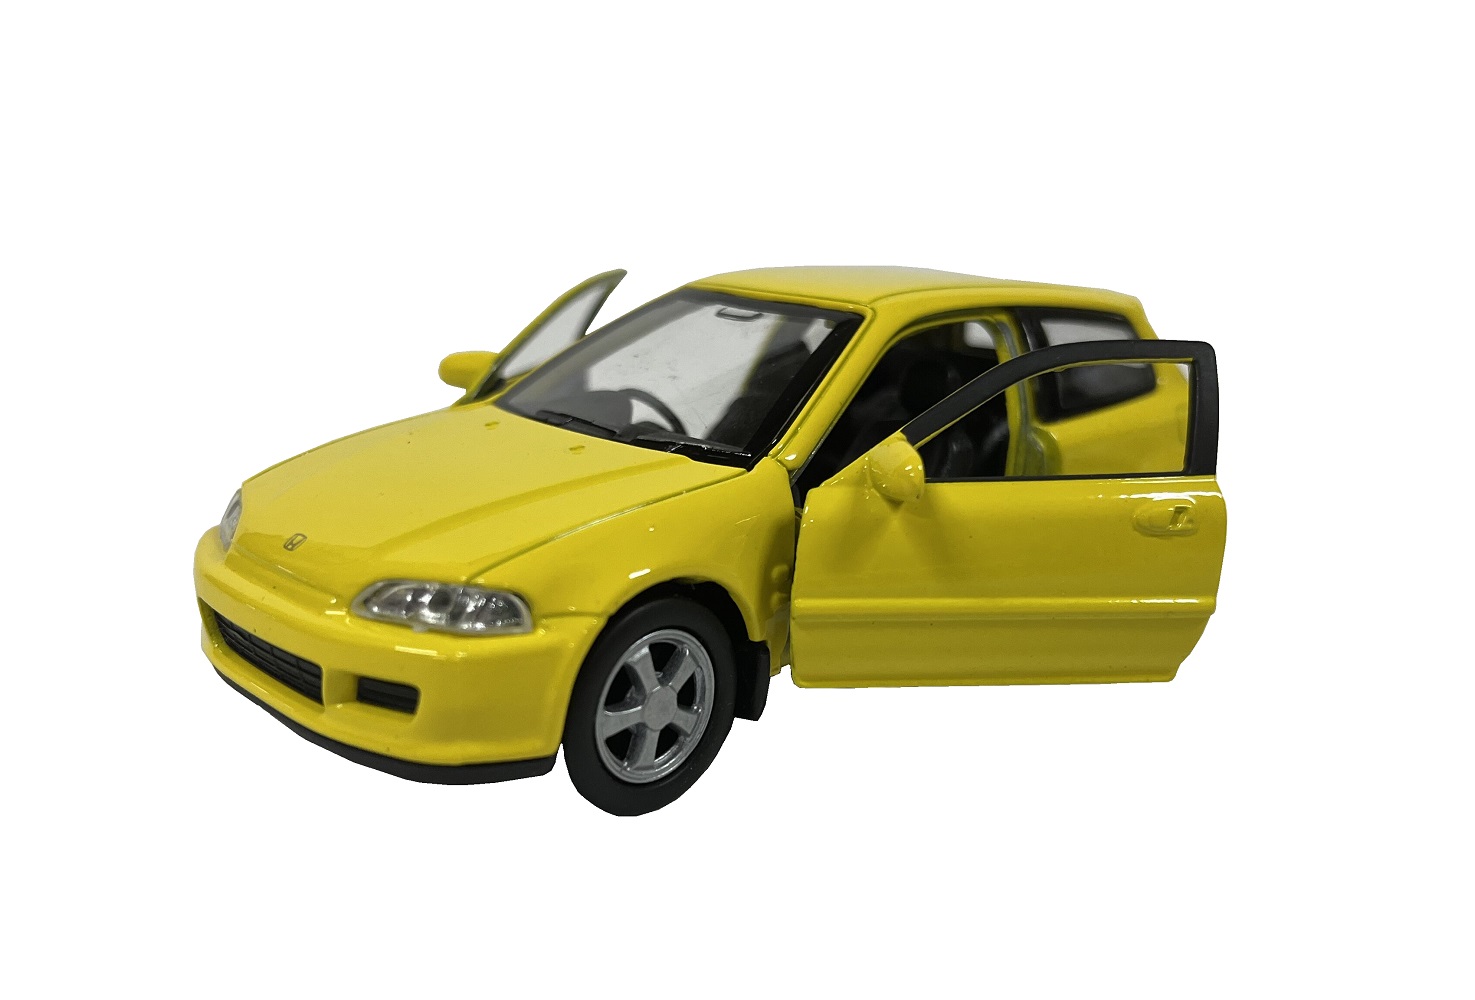 Модель машины Welly 1:38 Honda Civic EG6 желтый 43813 motorhelix mh 1 64 honda civic type r fl5 car model